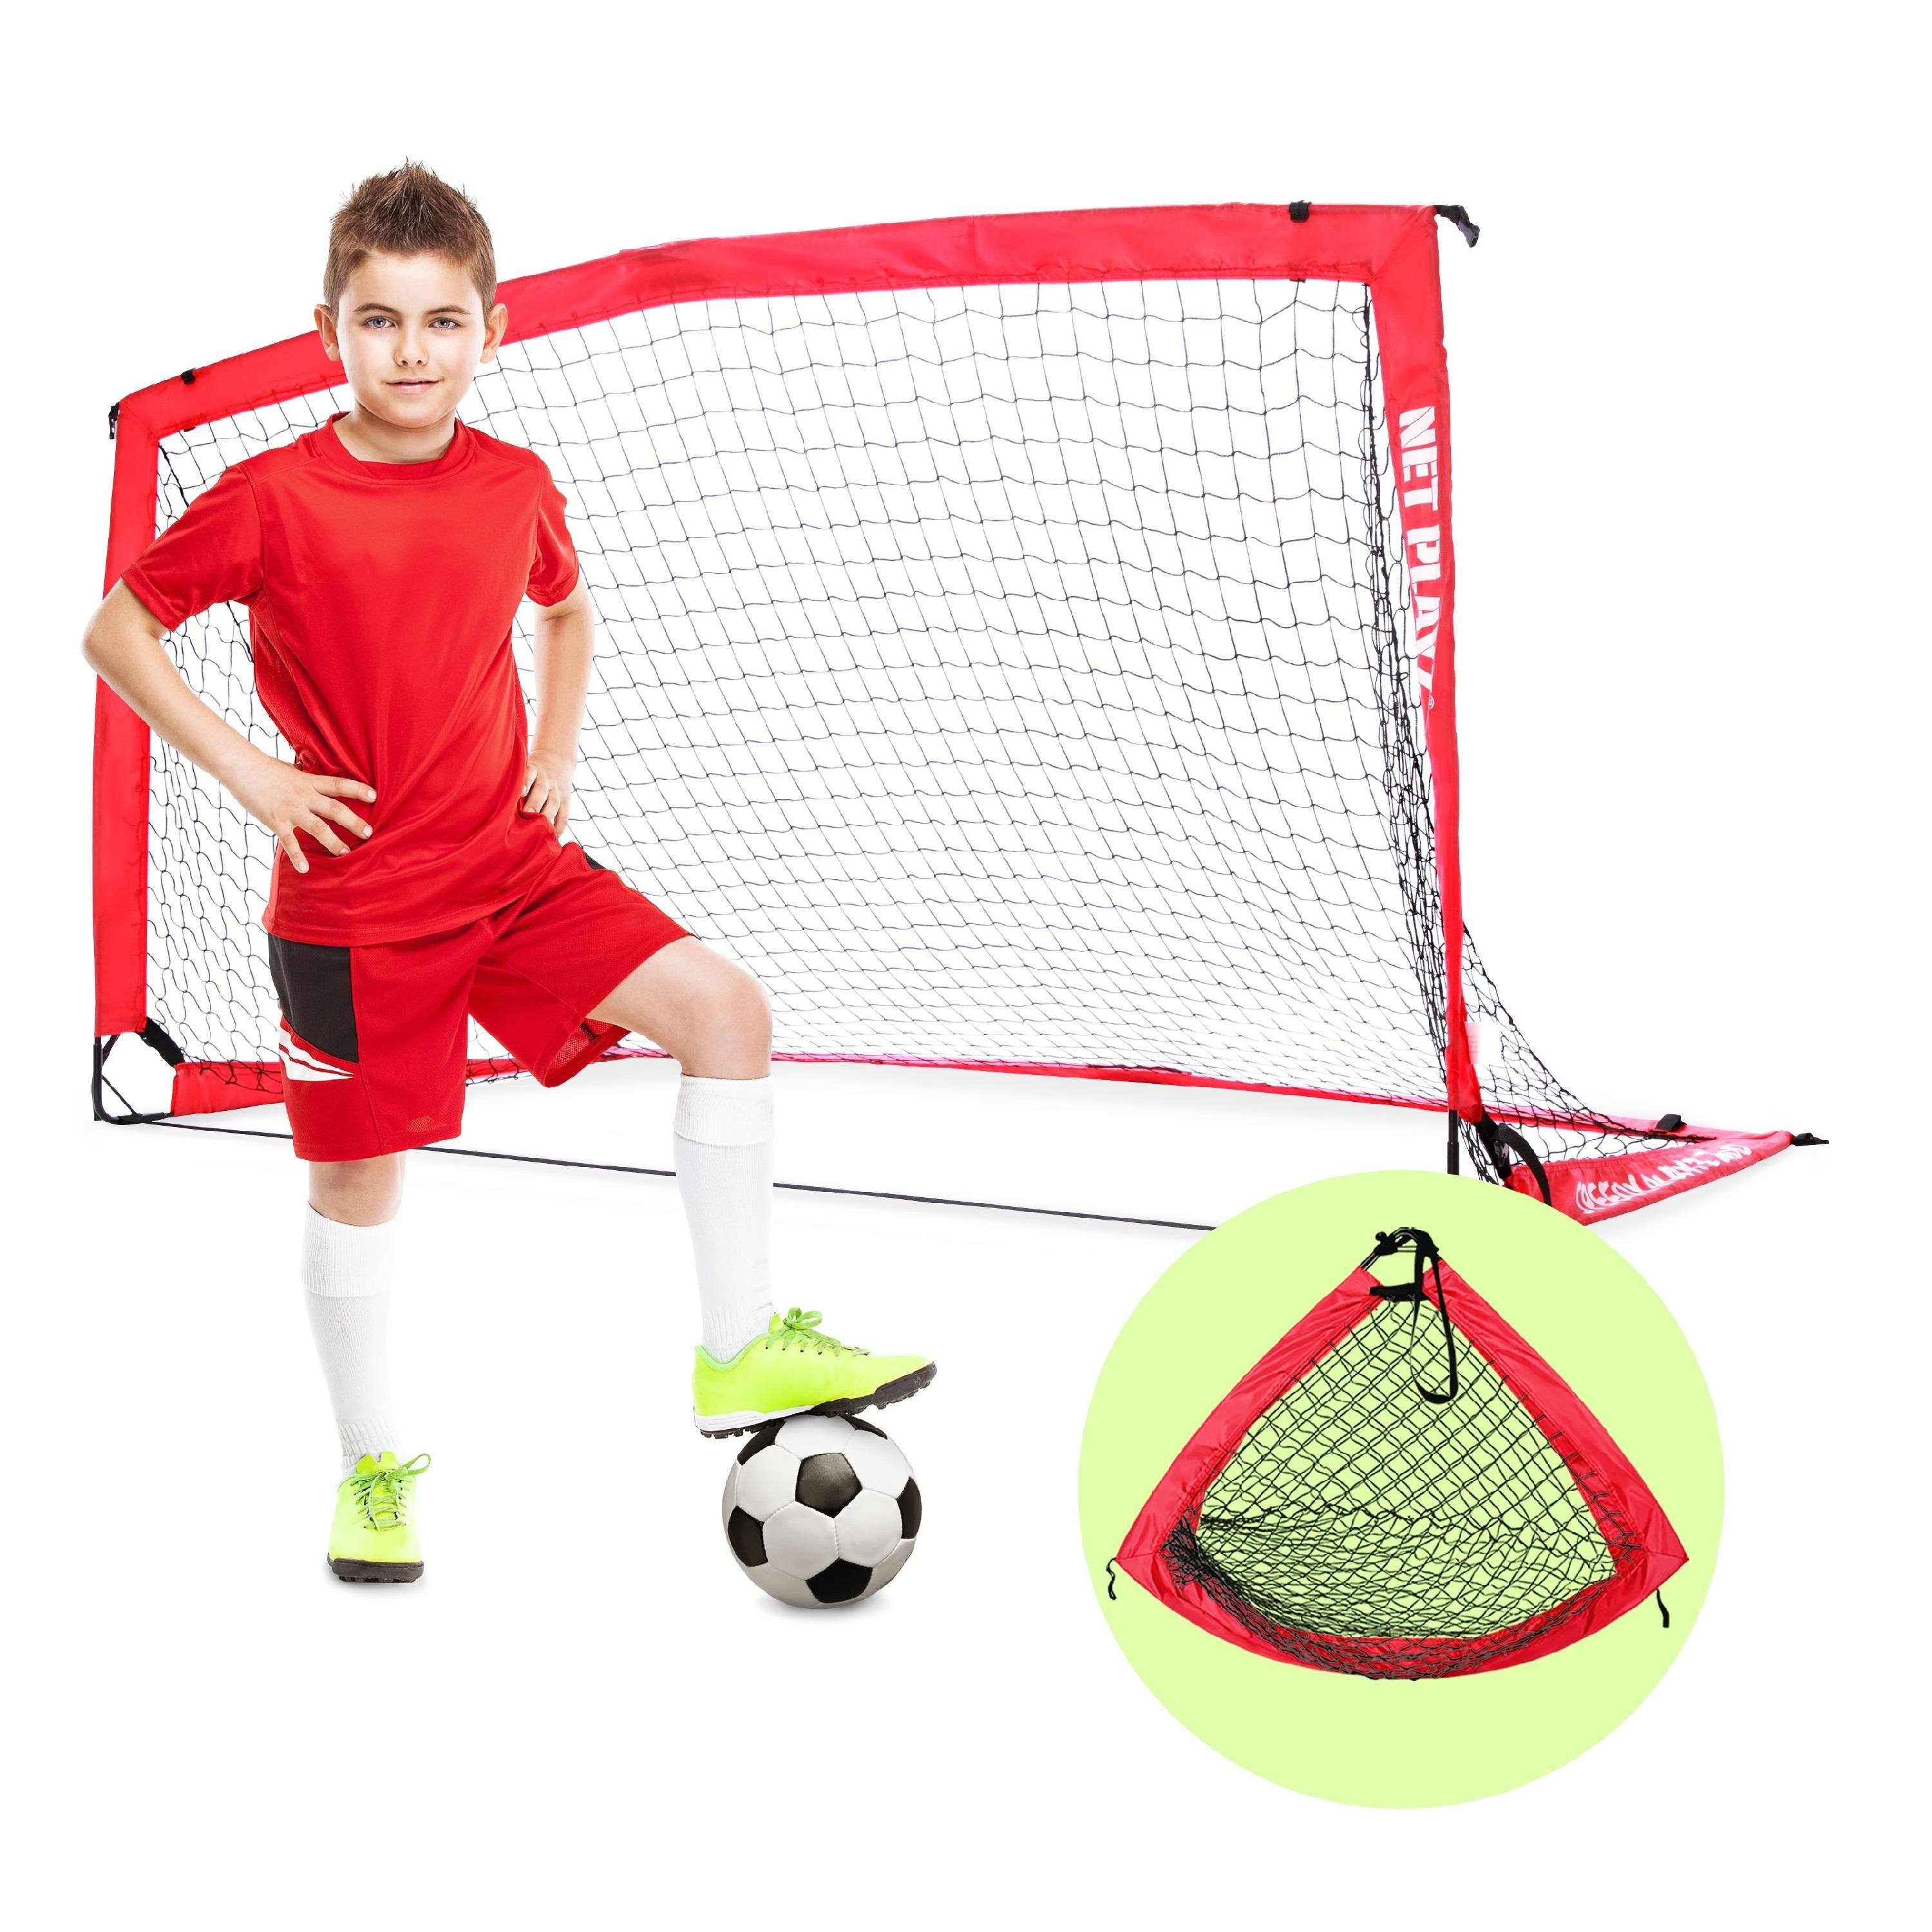 NET PLAYZ 5 Mins Easy Setup Portable 9ft x 5ft Training Soccer Goal